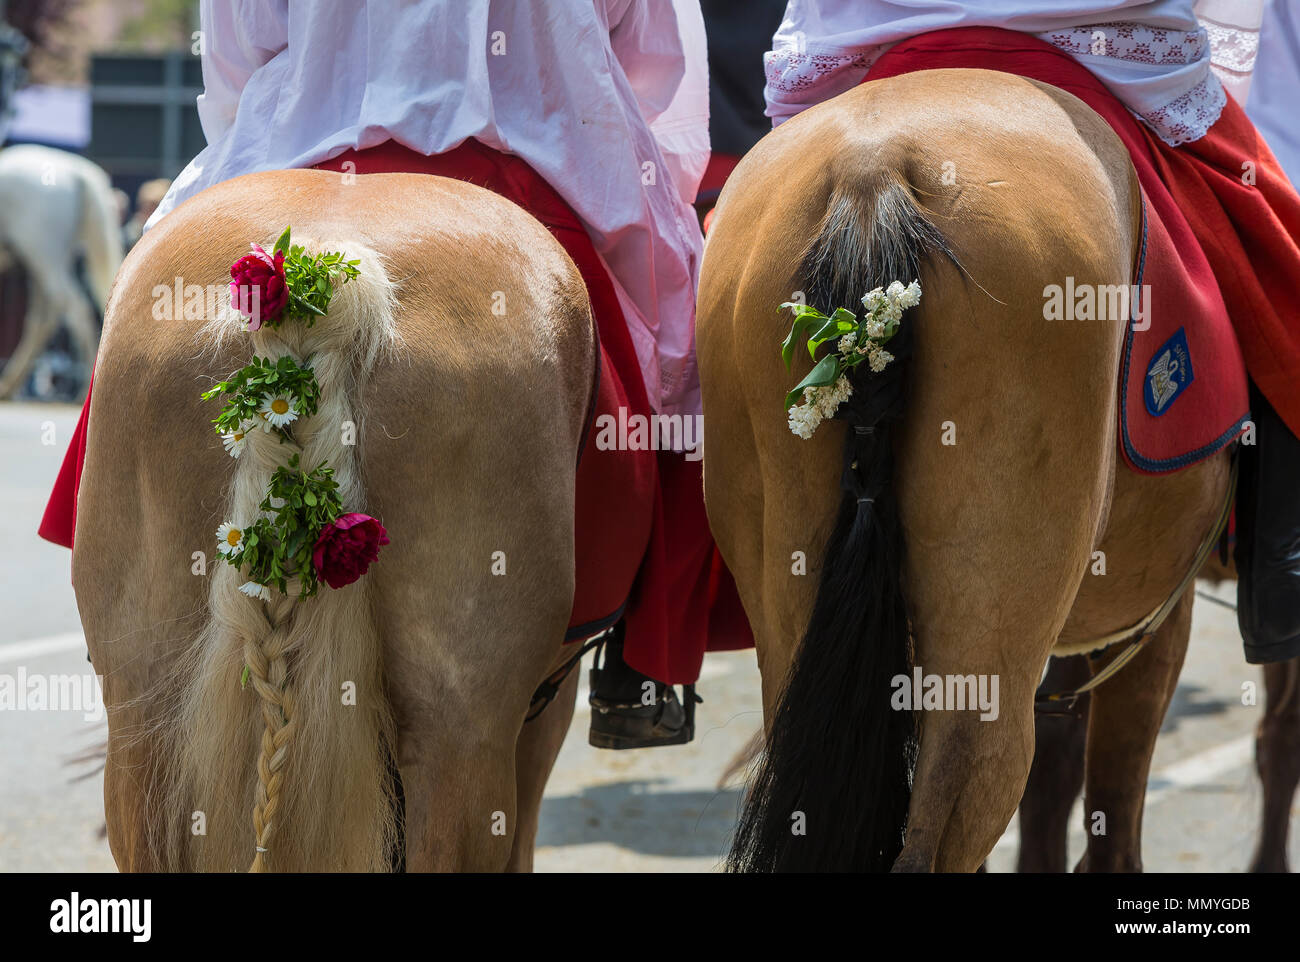 Blutritt, Weingarten, Deutschland, mit 2500 Pferden, zu Ehren eines Blut Relikt. Die Wallfahrt ist der größte Equestrian Prozession in Europa. Stockfoto